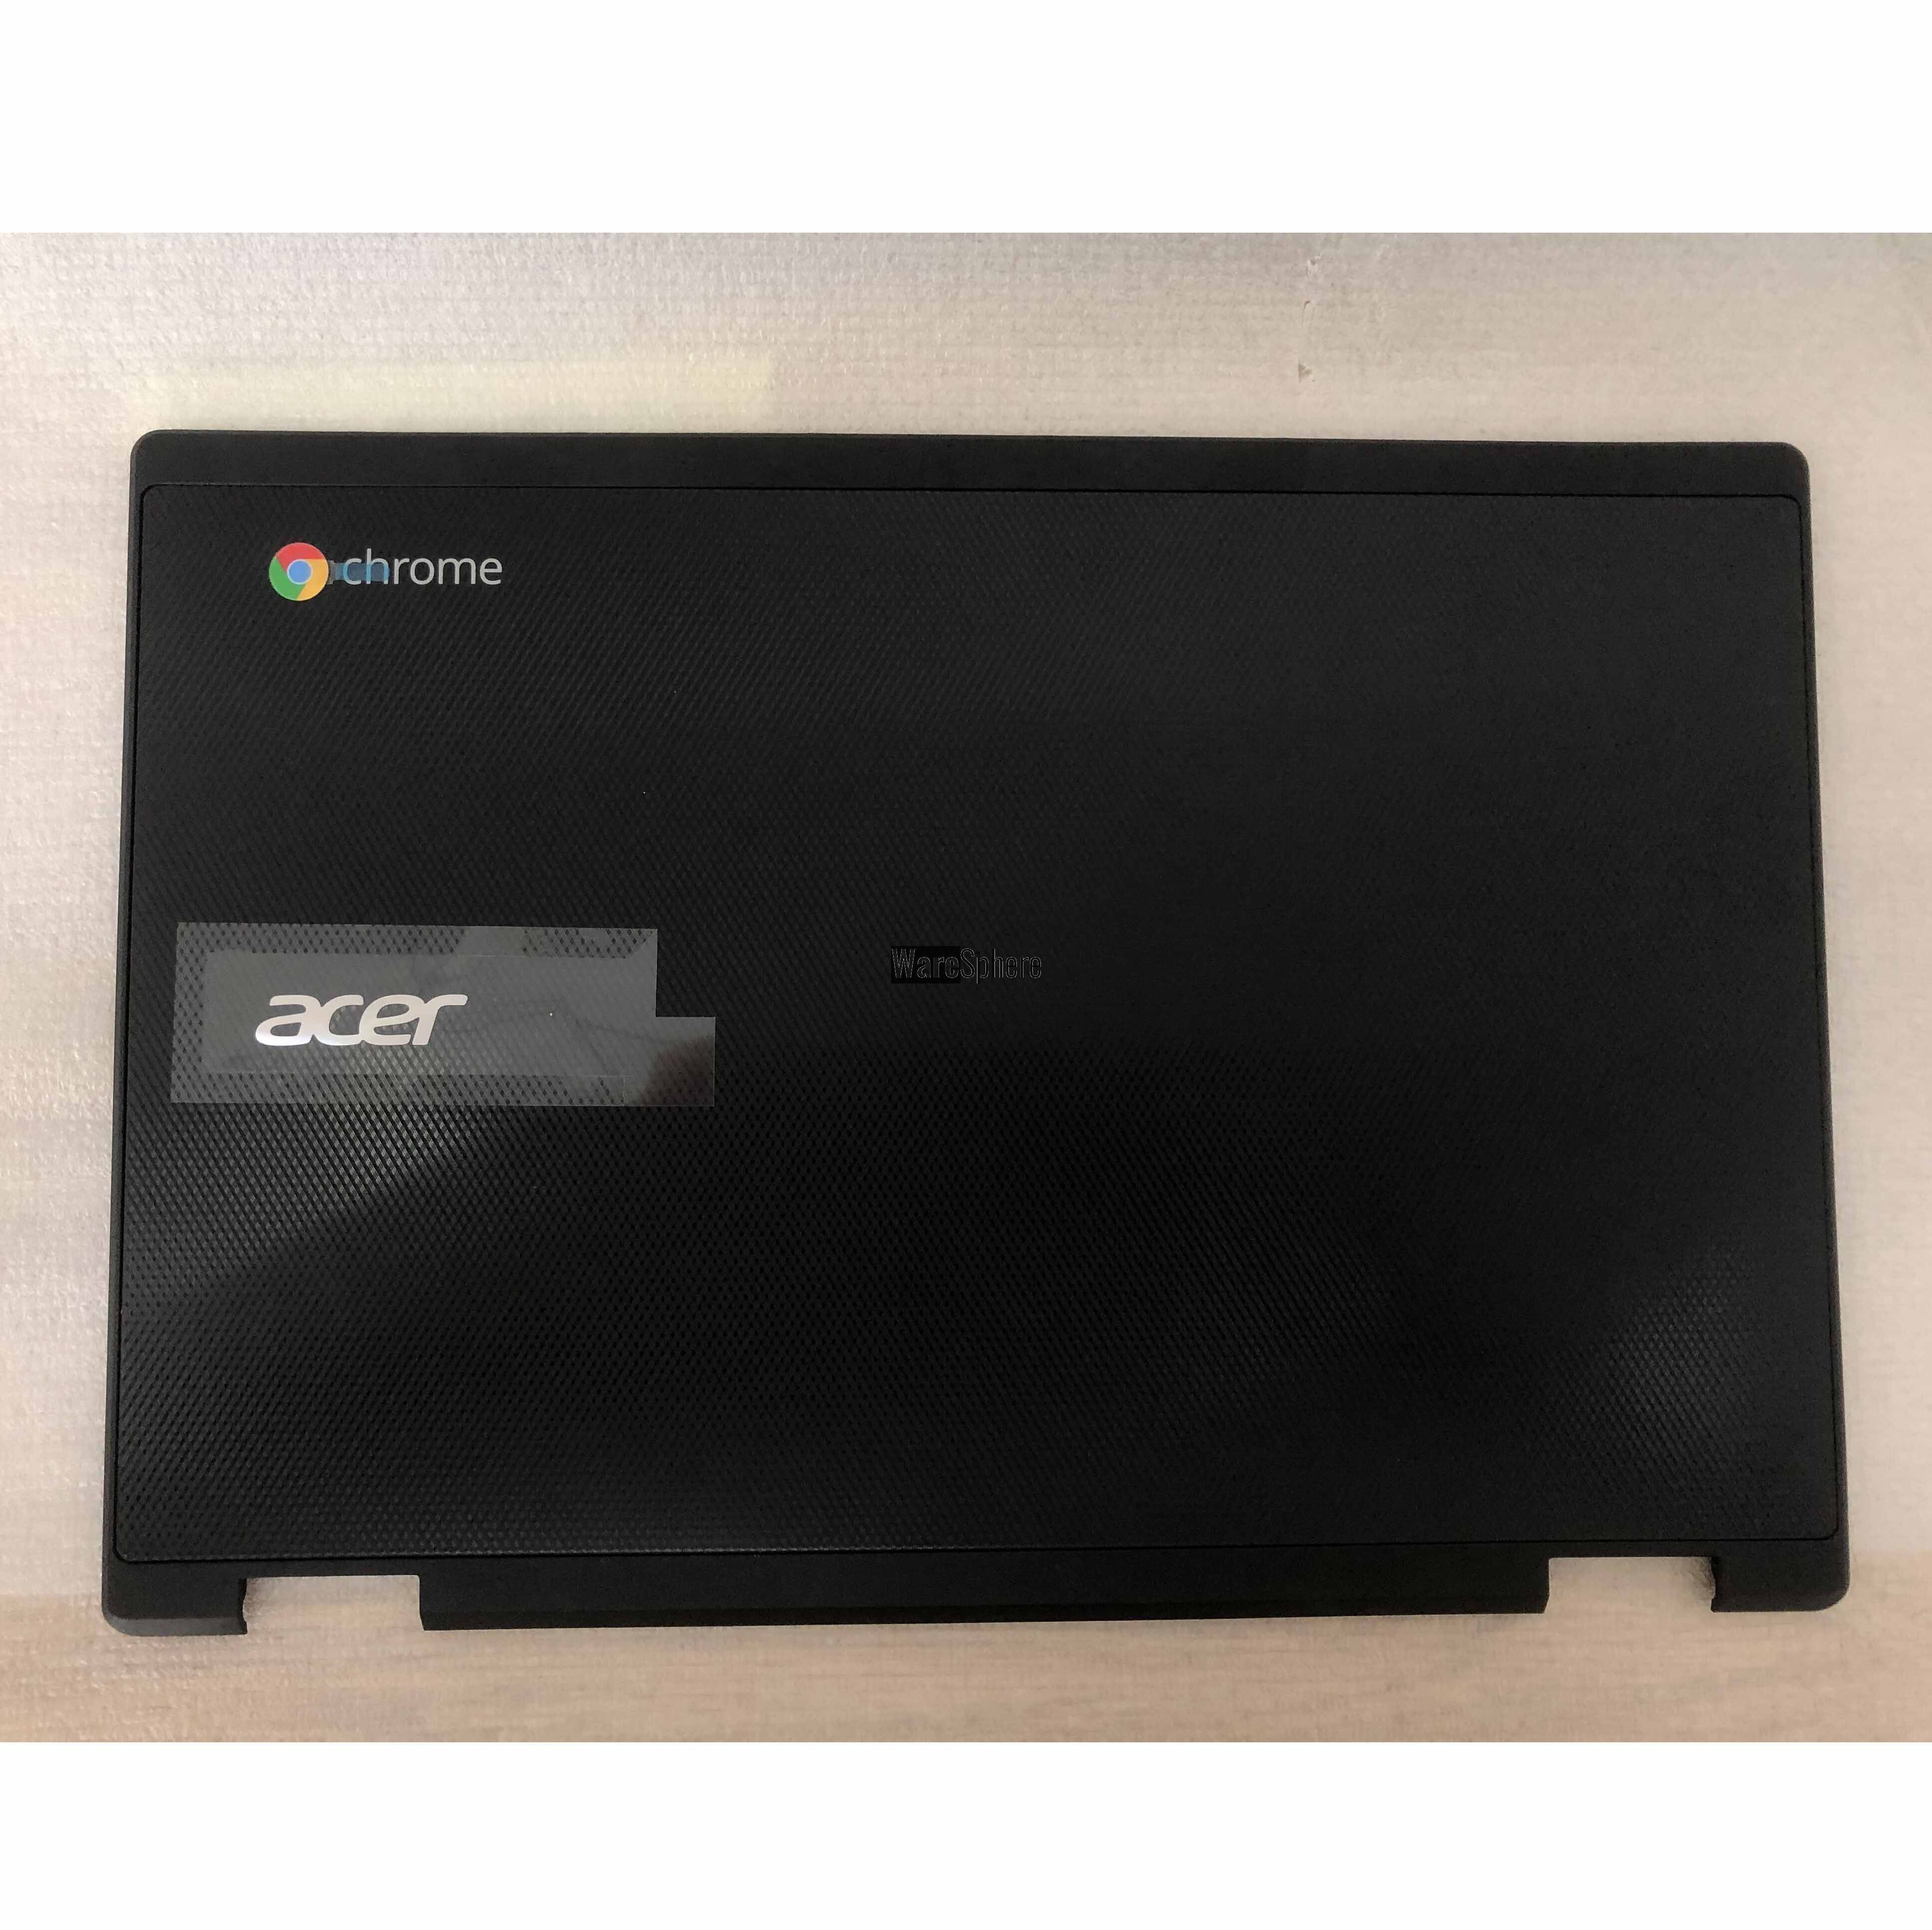 LCD Back Cover for ACER Chromebook 11 C738T EAZHR008020 Black